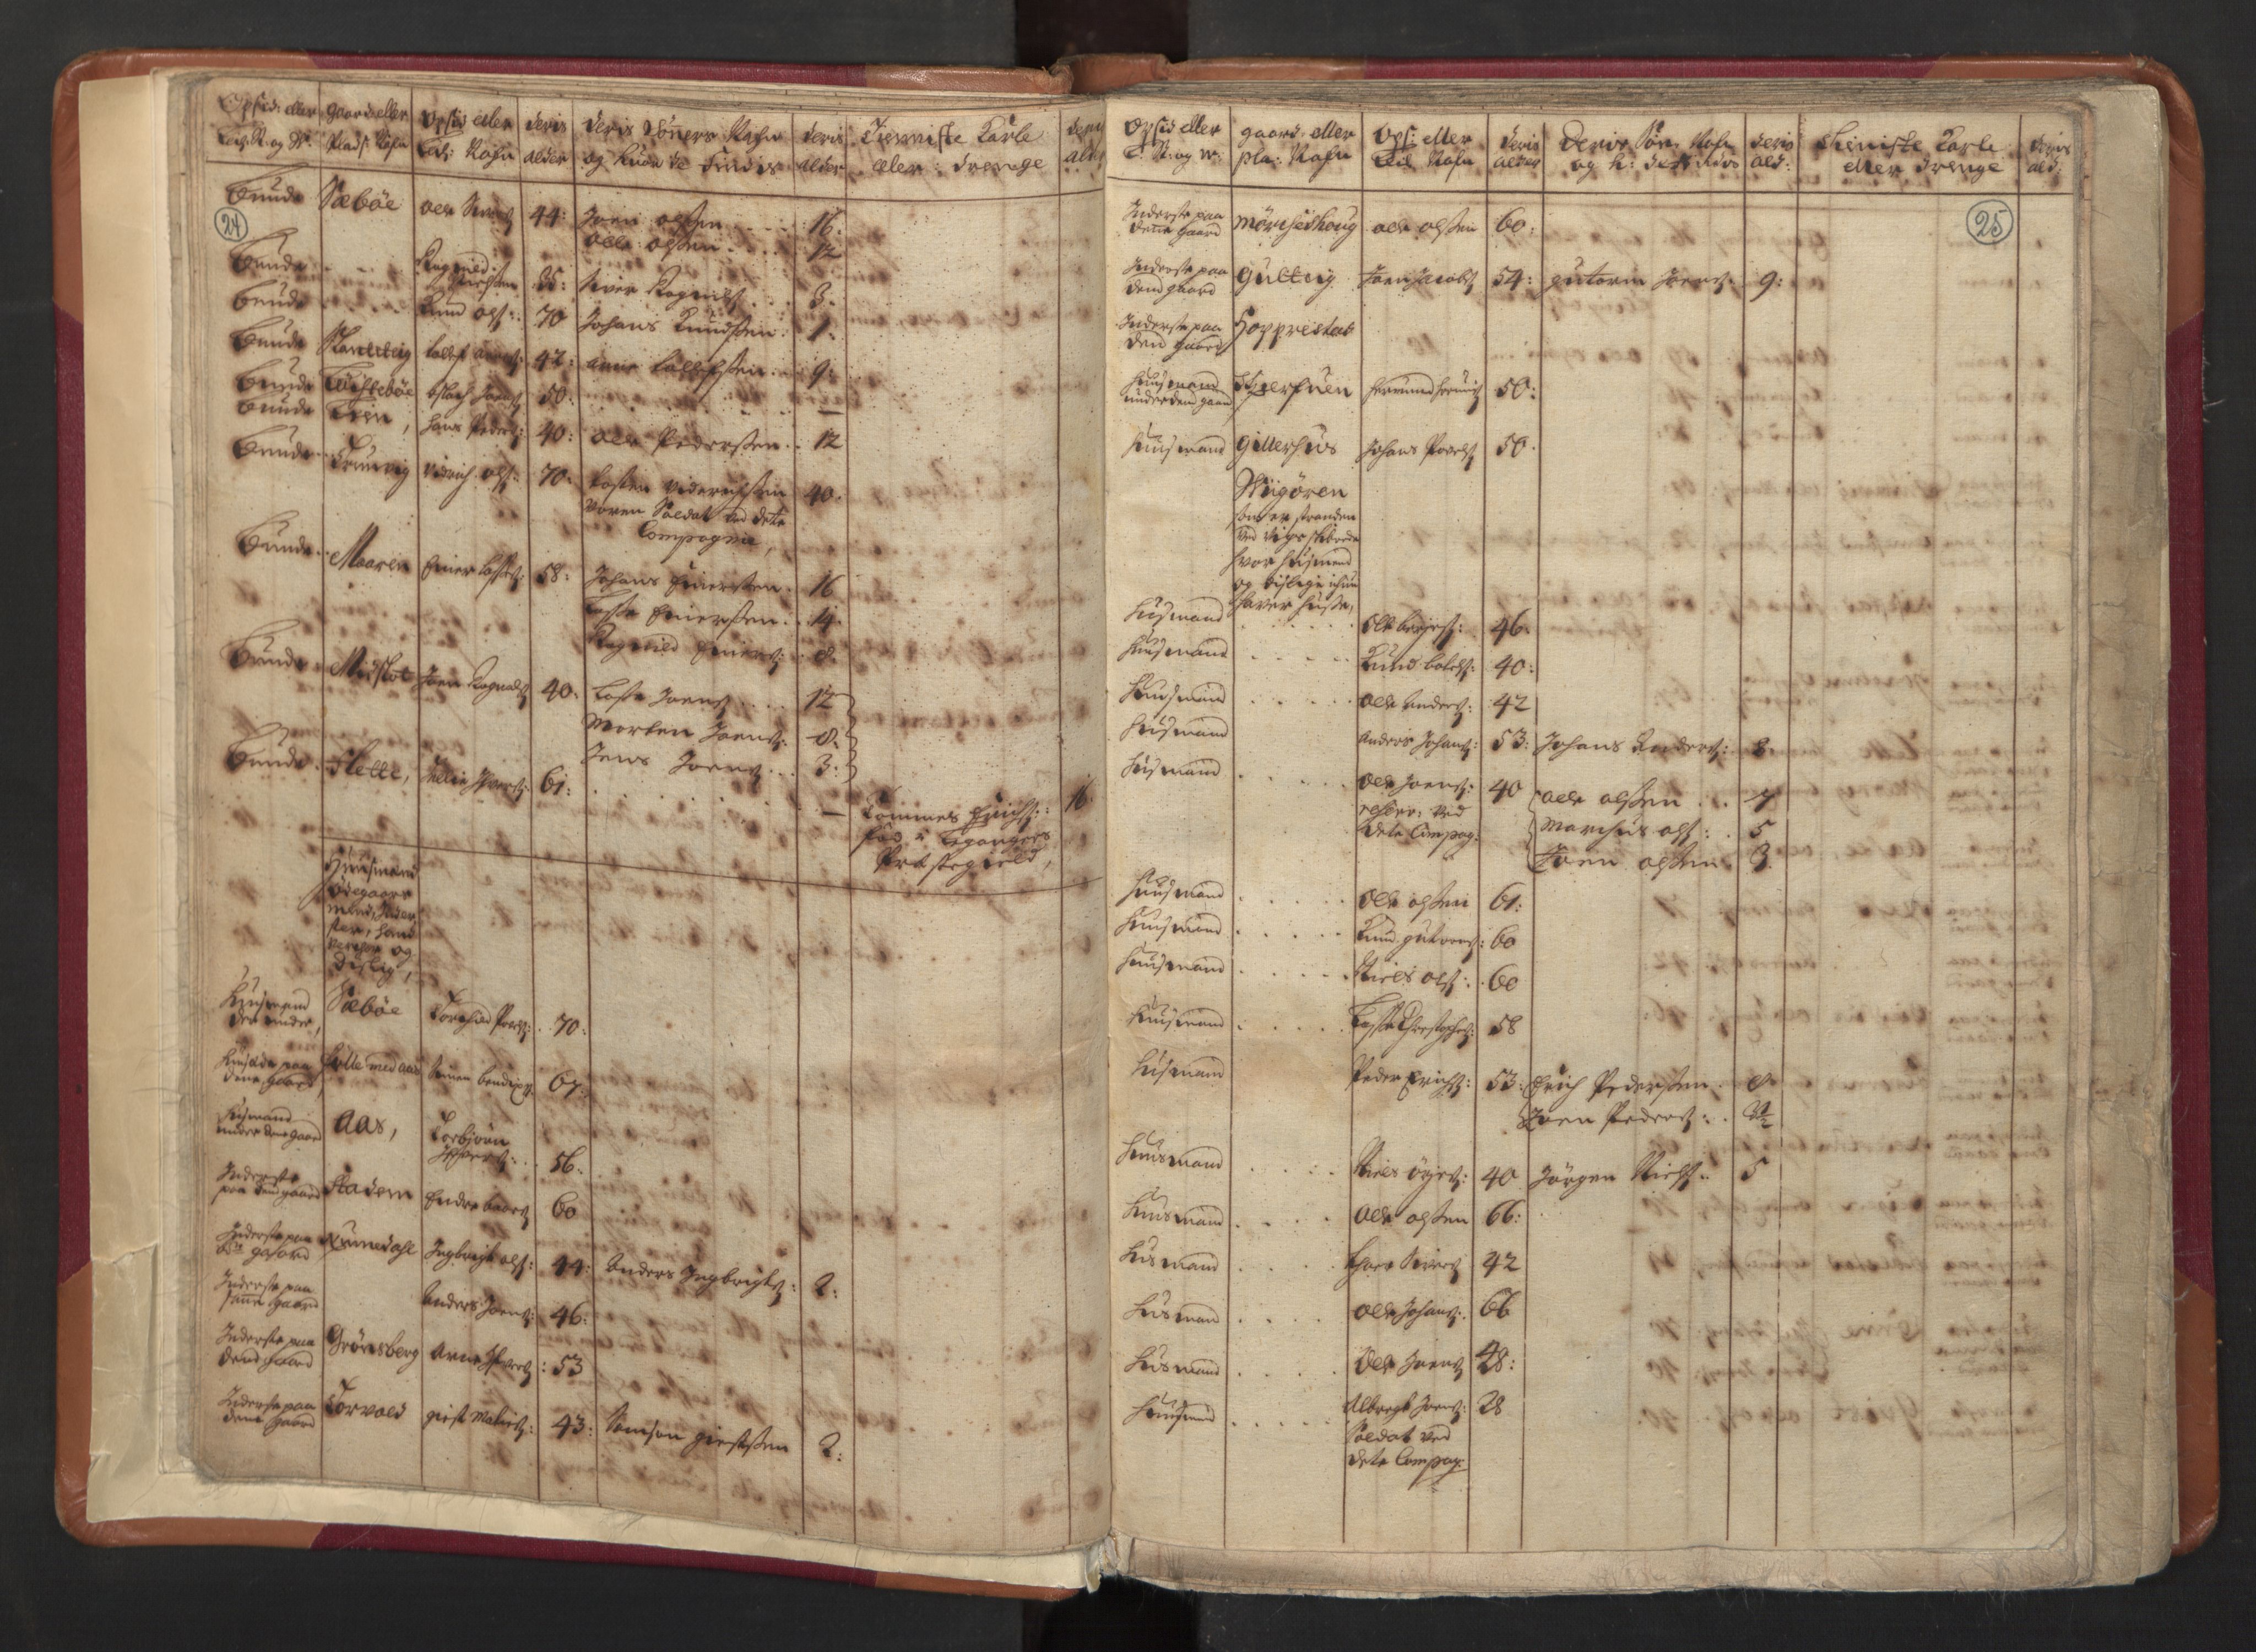 RA, Manntallet 1701, nr. 8: Ytre Sogn fogderi og Indre Sogn fogderi, 1701, s. 24-25